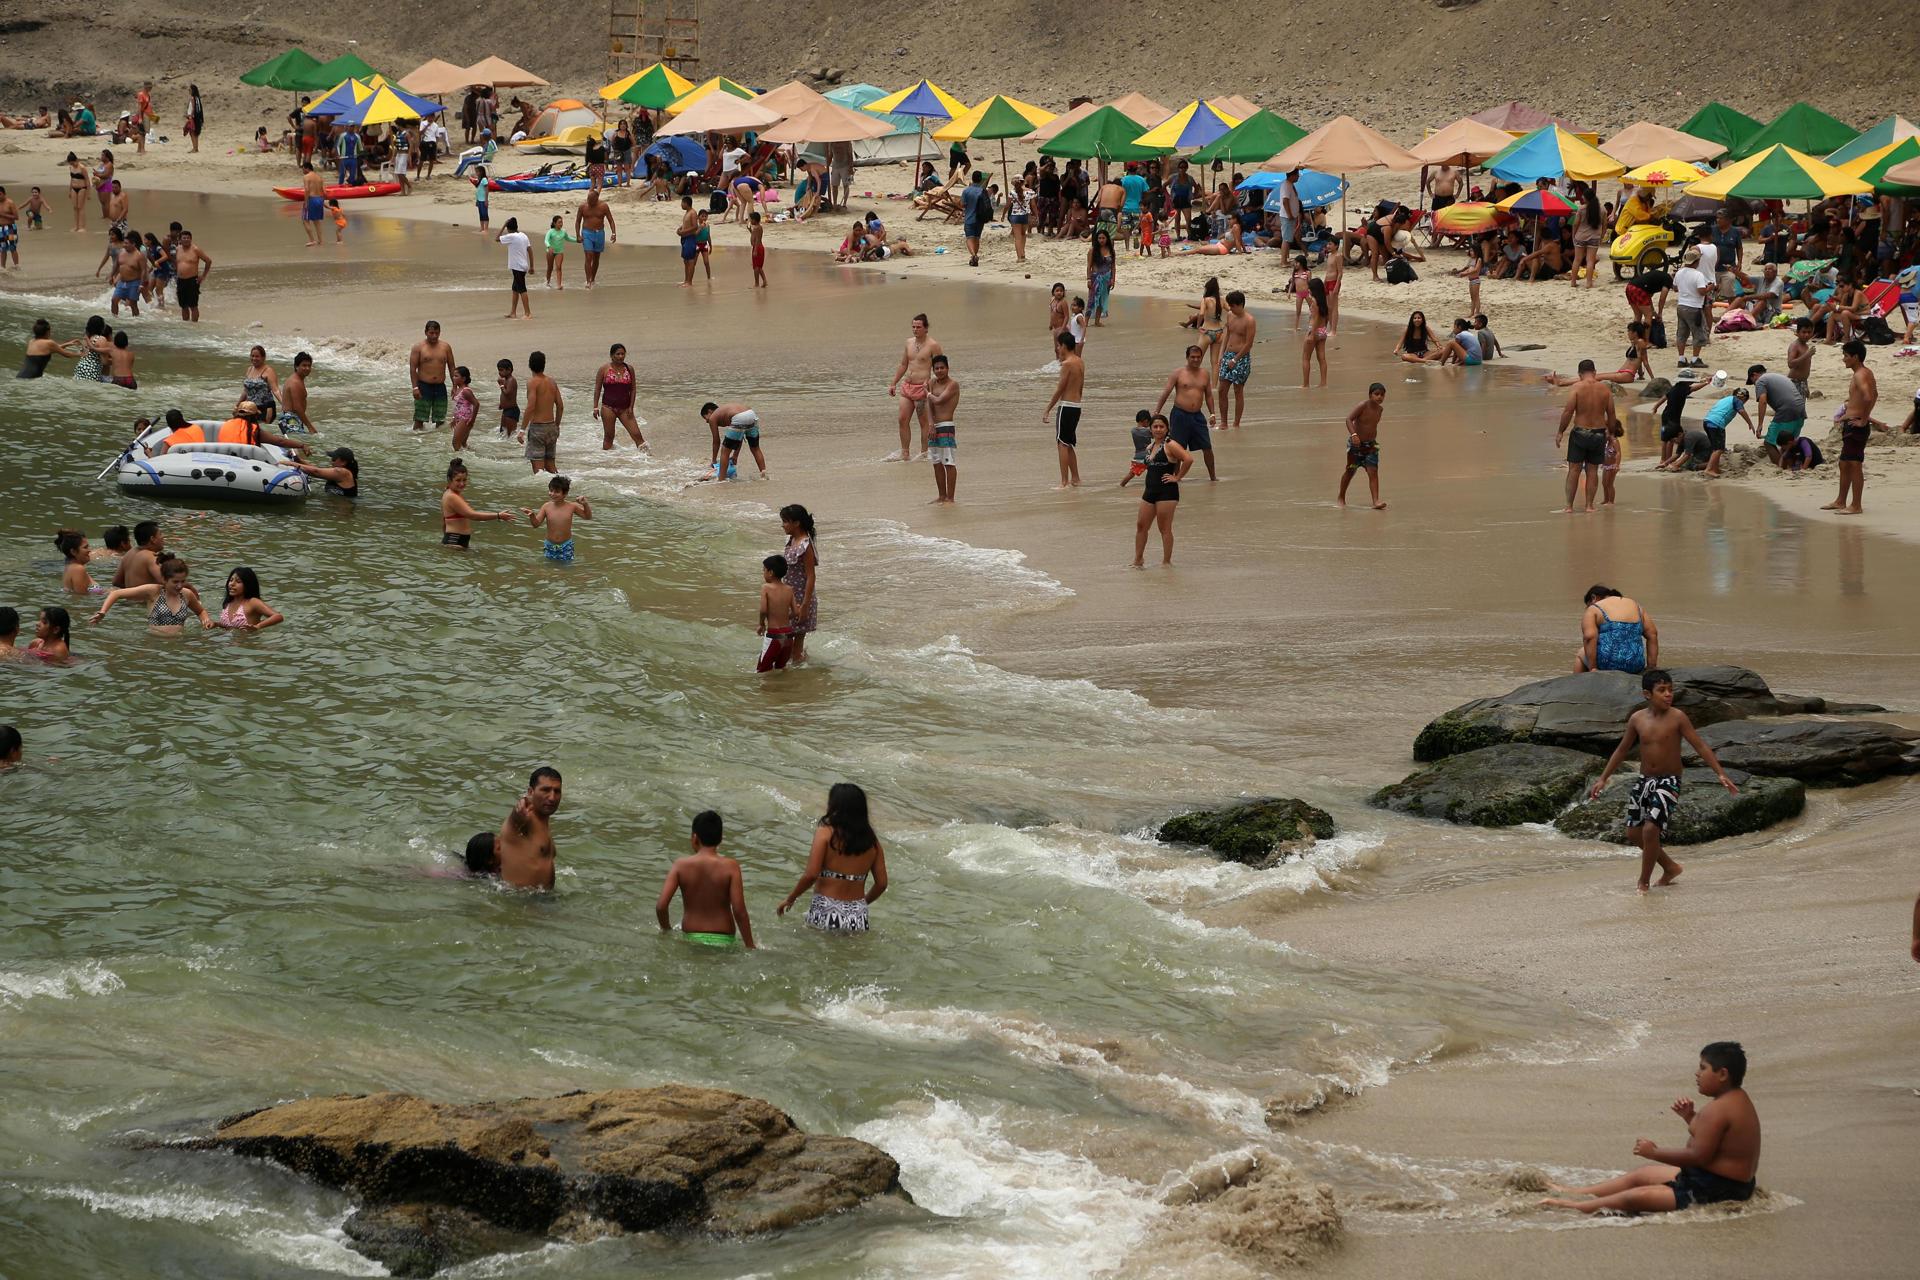 Fotografía de archivo de un grupo de turistas bañándose en la playa denominada como "la mina" dentro de la Reserva de Paracas la cual es una de las Áreas Naturales Protegidas del Perú (ANP). EFE/Ernesto Arias